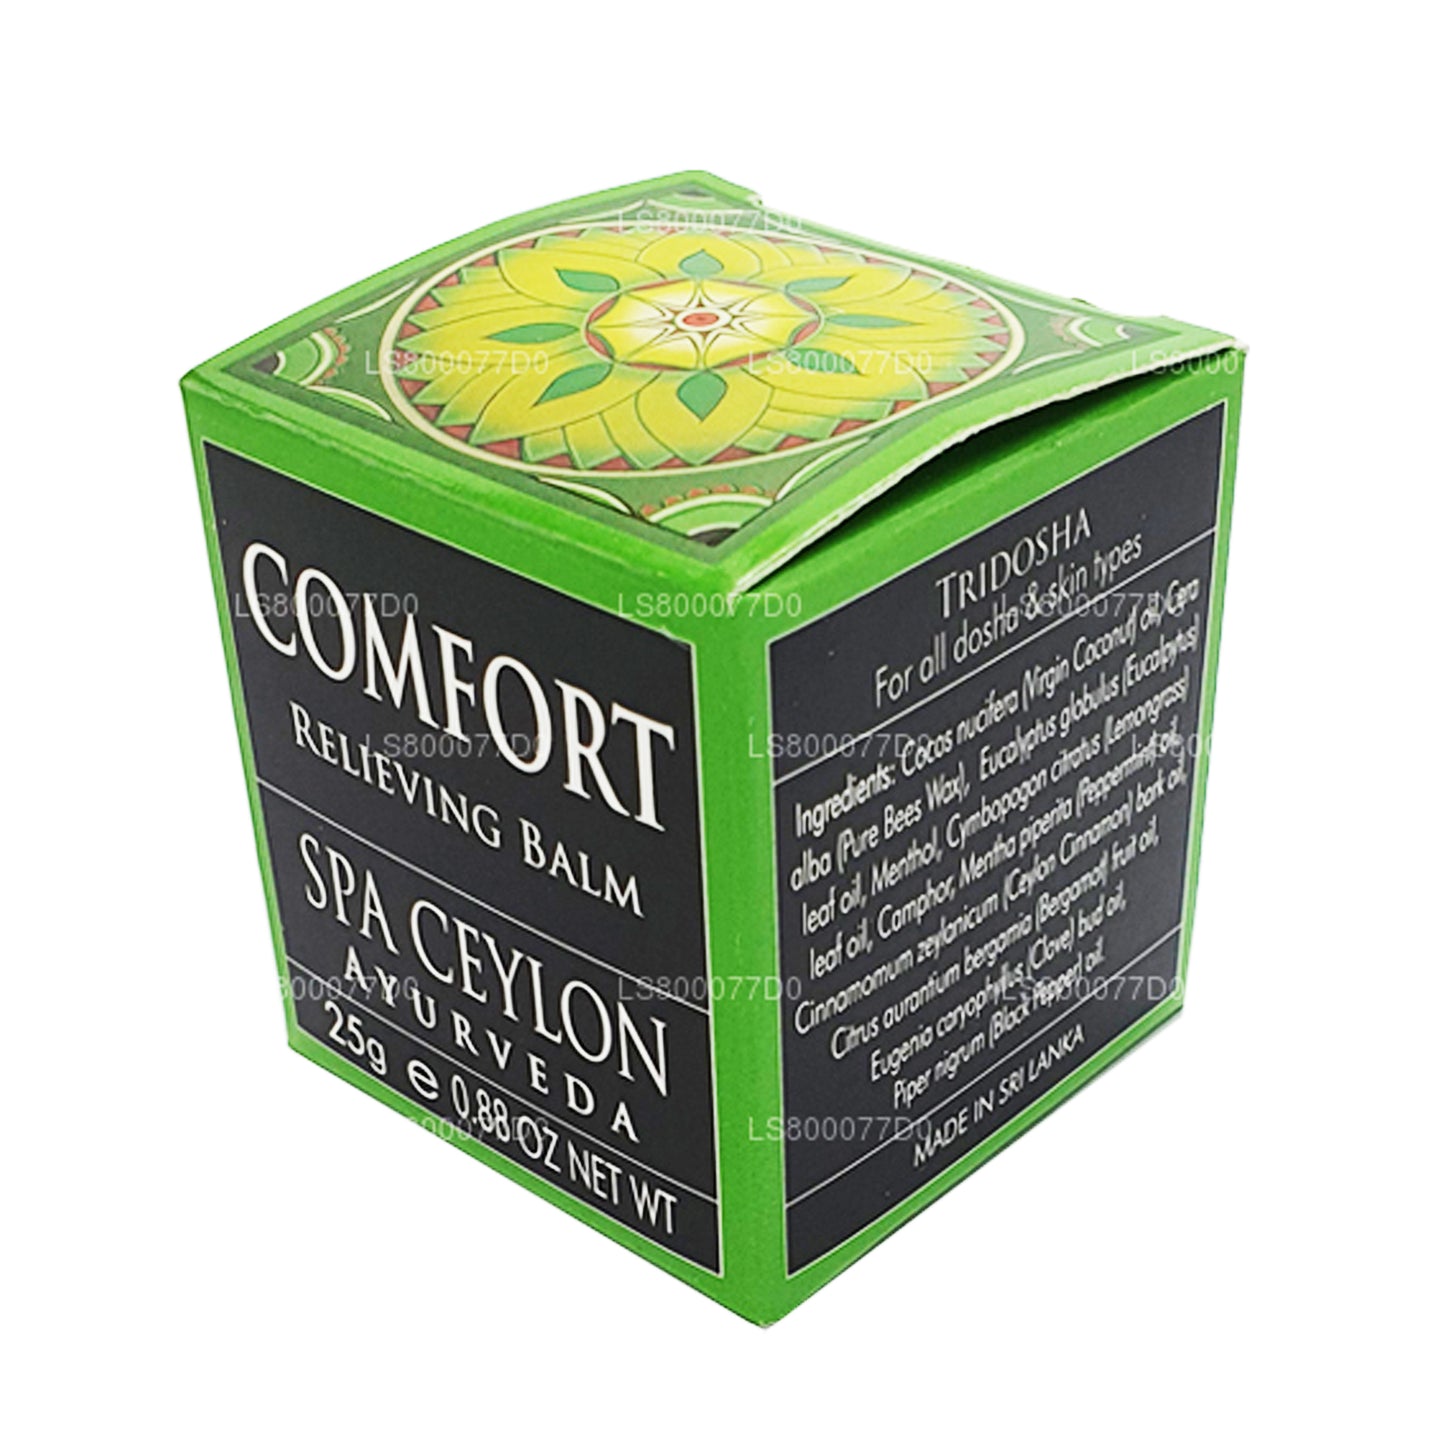 Bálsamo calmante Spa Ceylon Comfort (25 g)